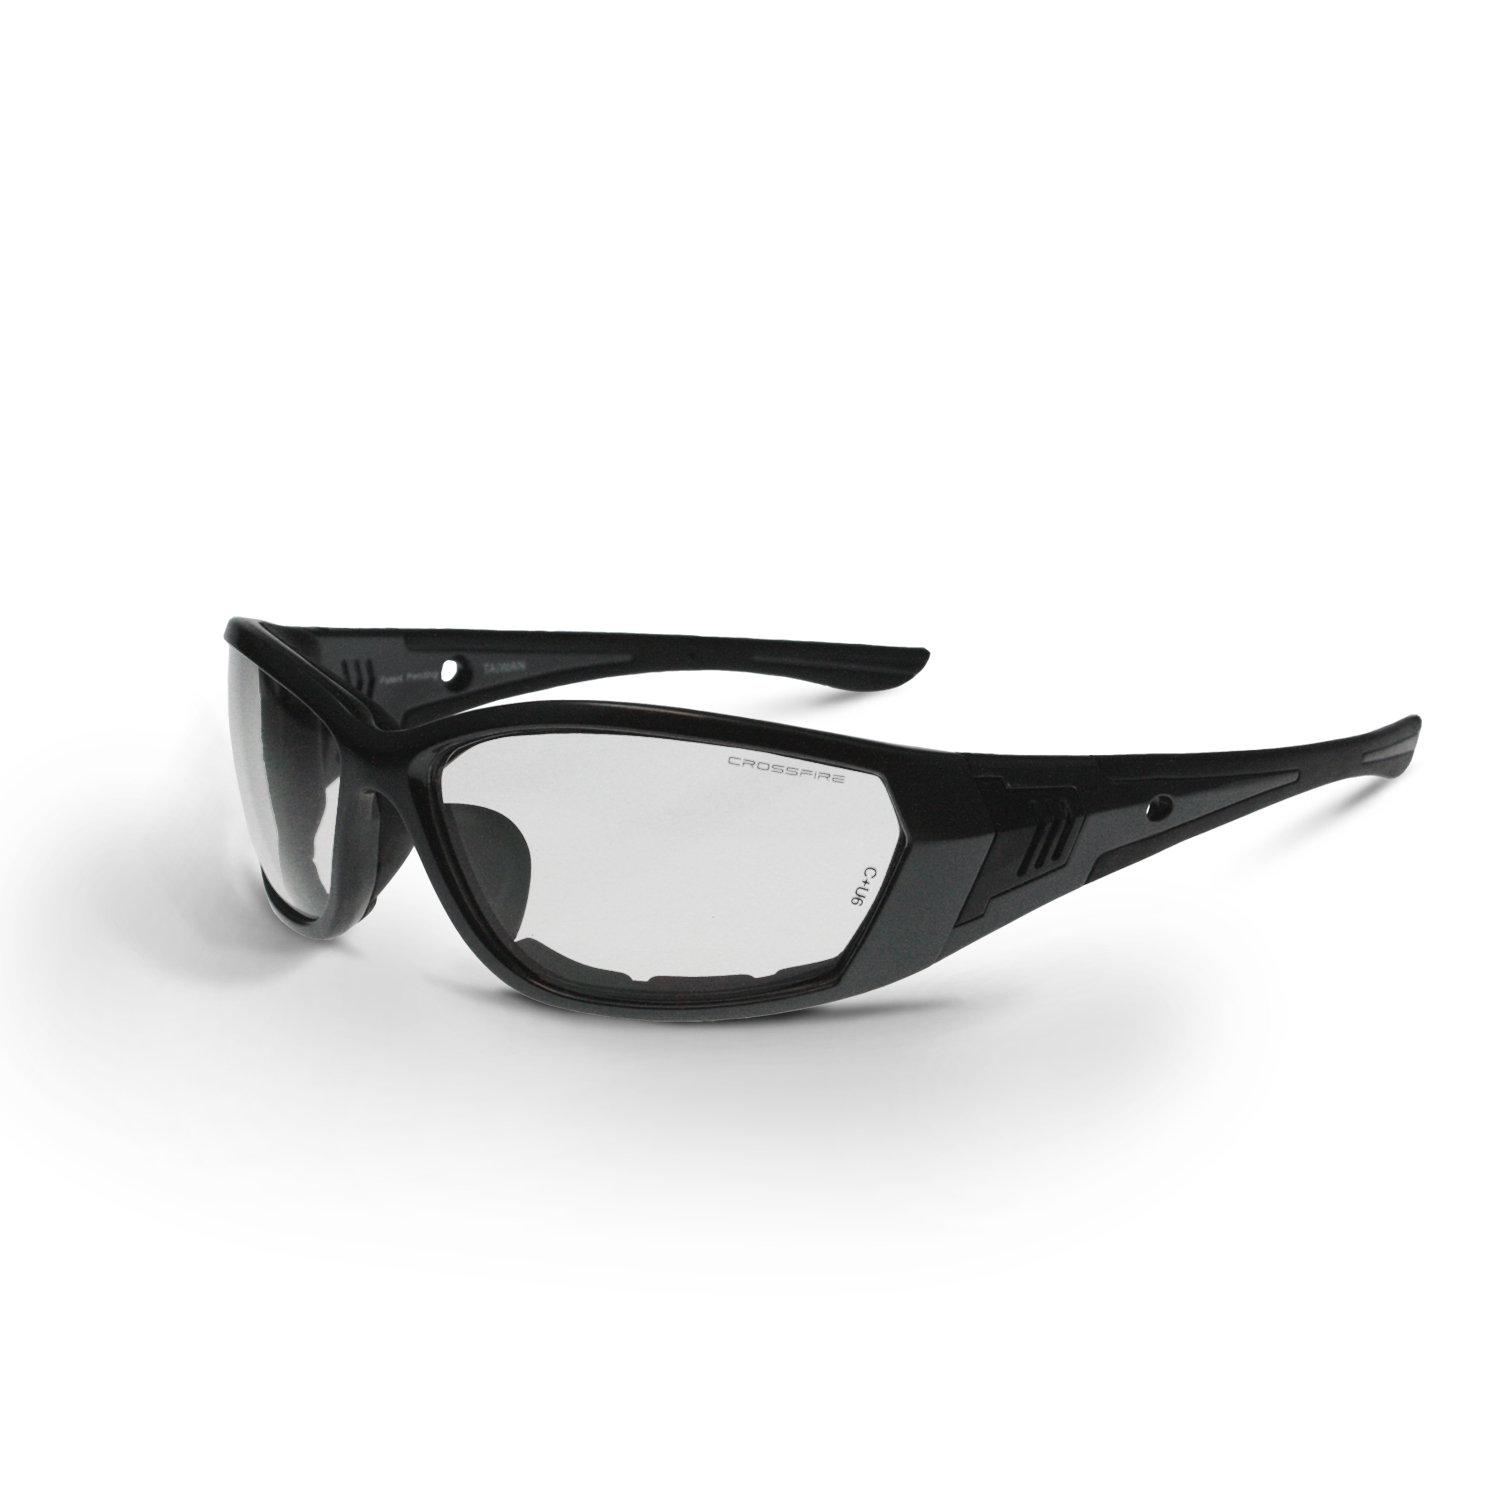 710 Foam Lined Safety Eyewear - Pearl Gray Frame - Clear Anti-Fog Lens